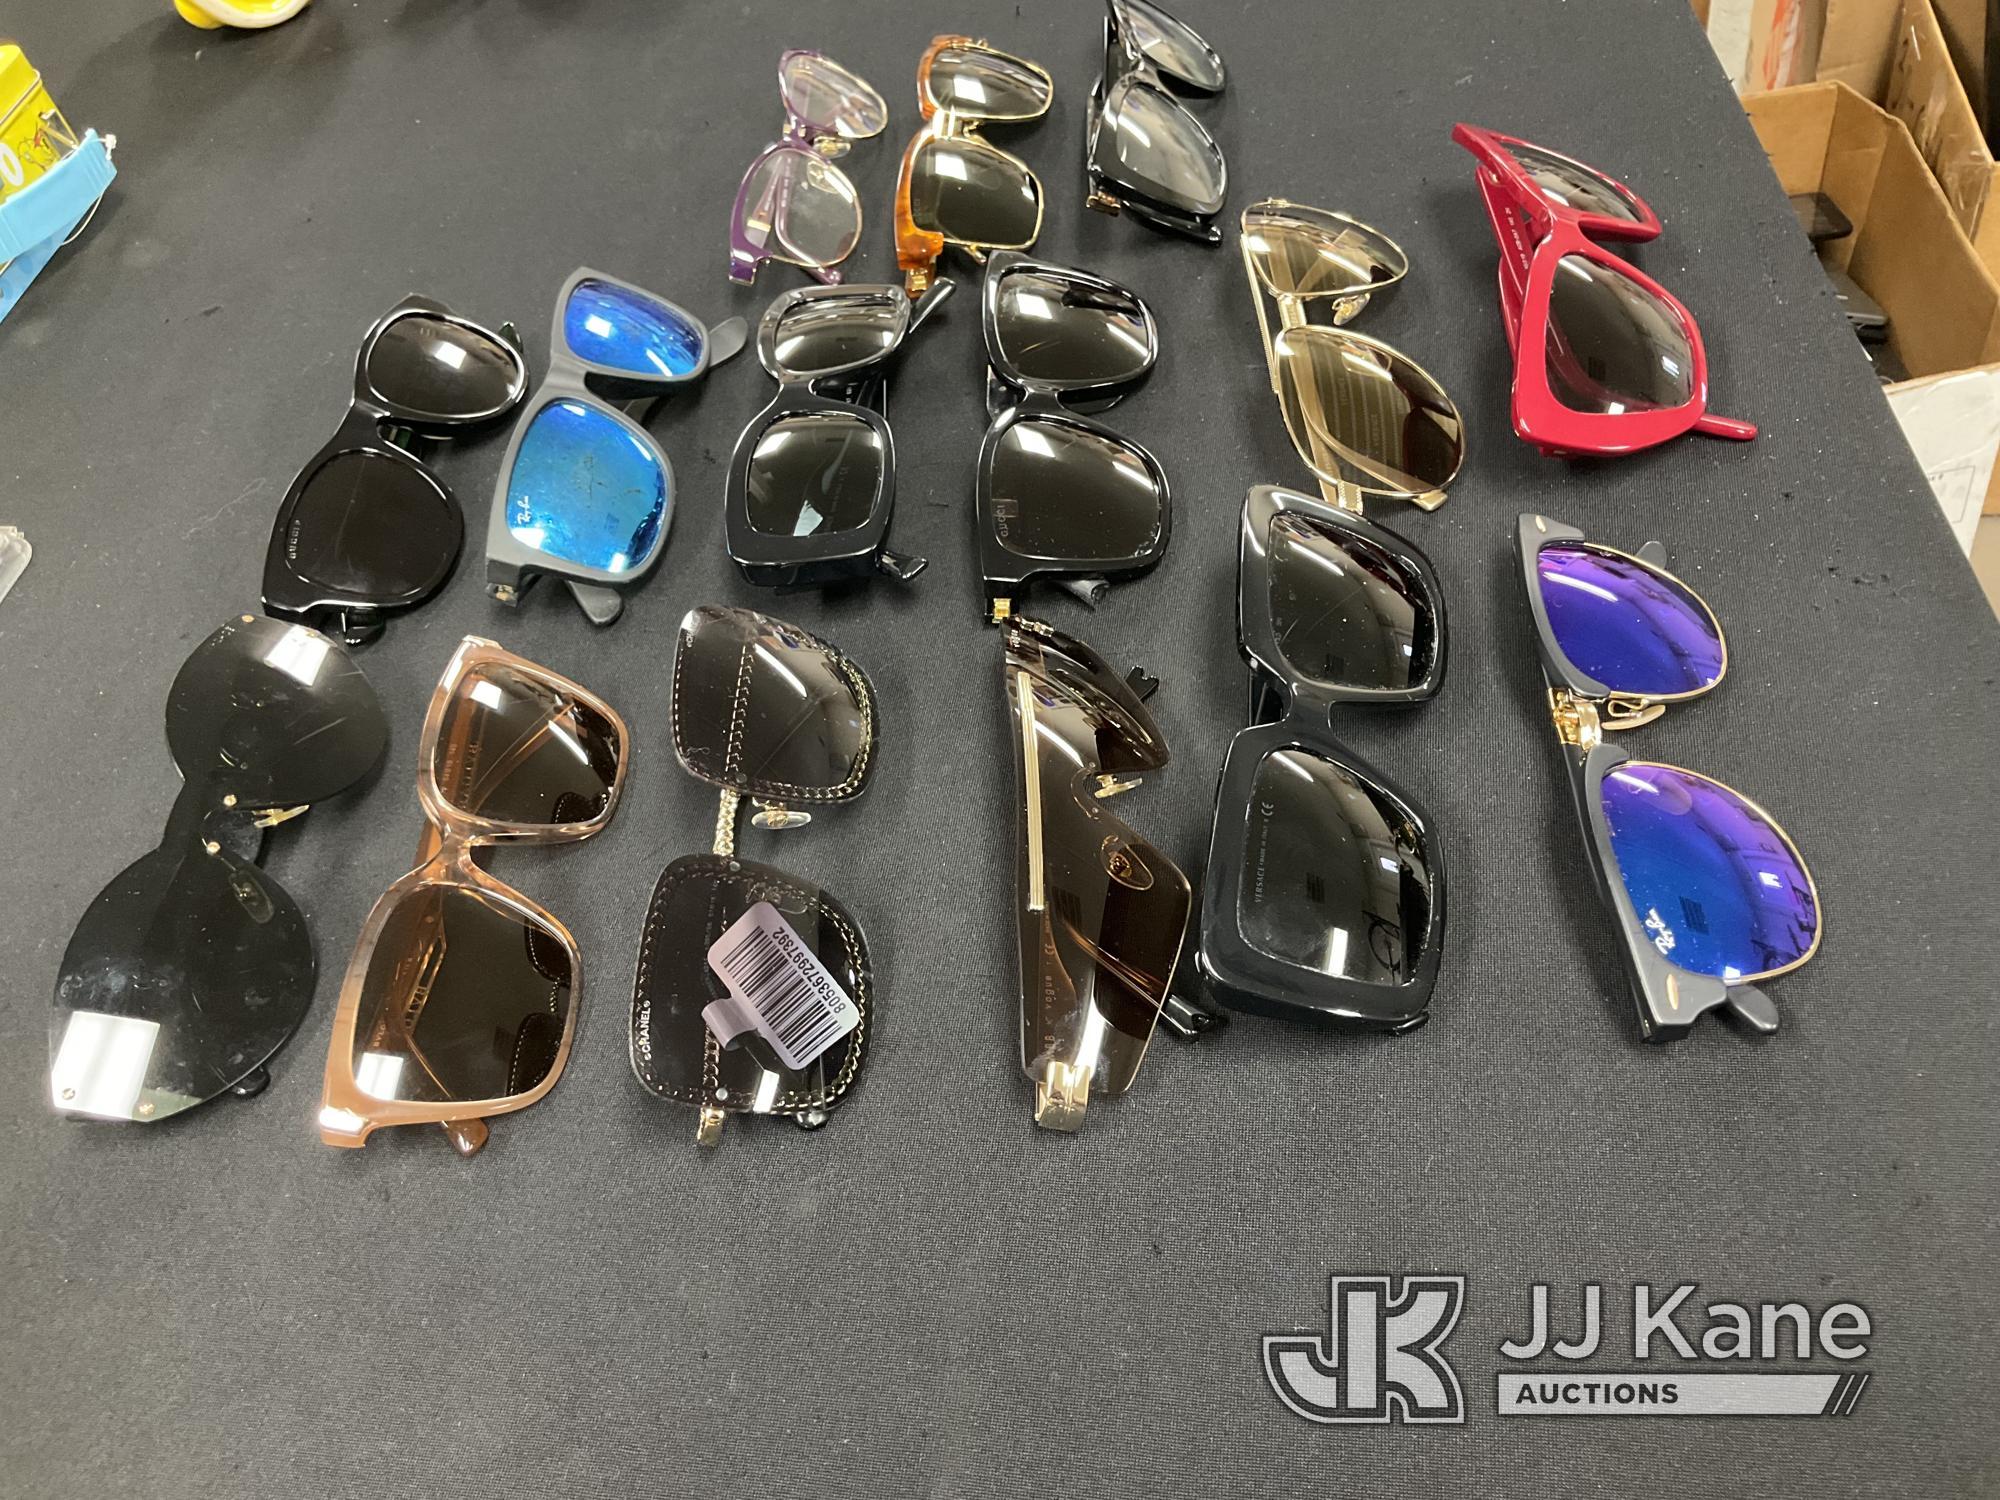 (Jurupa Valley, CA) Sunglasses Used